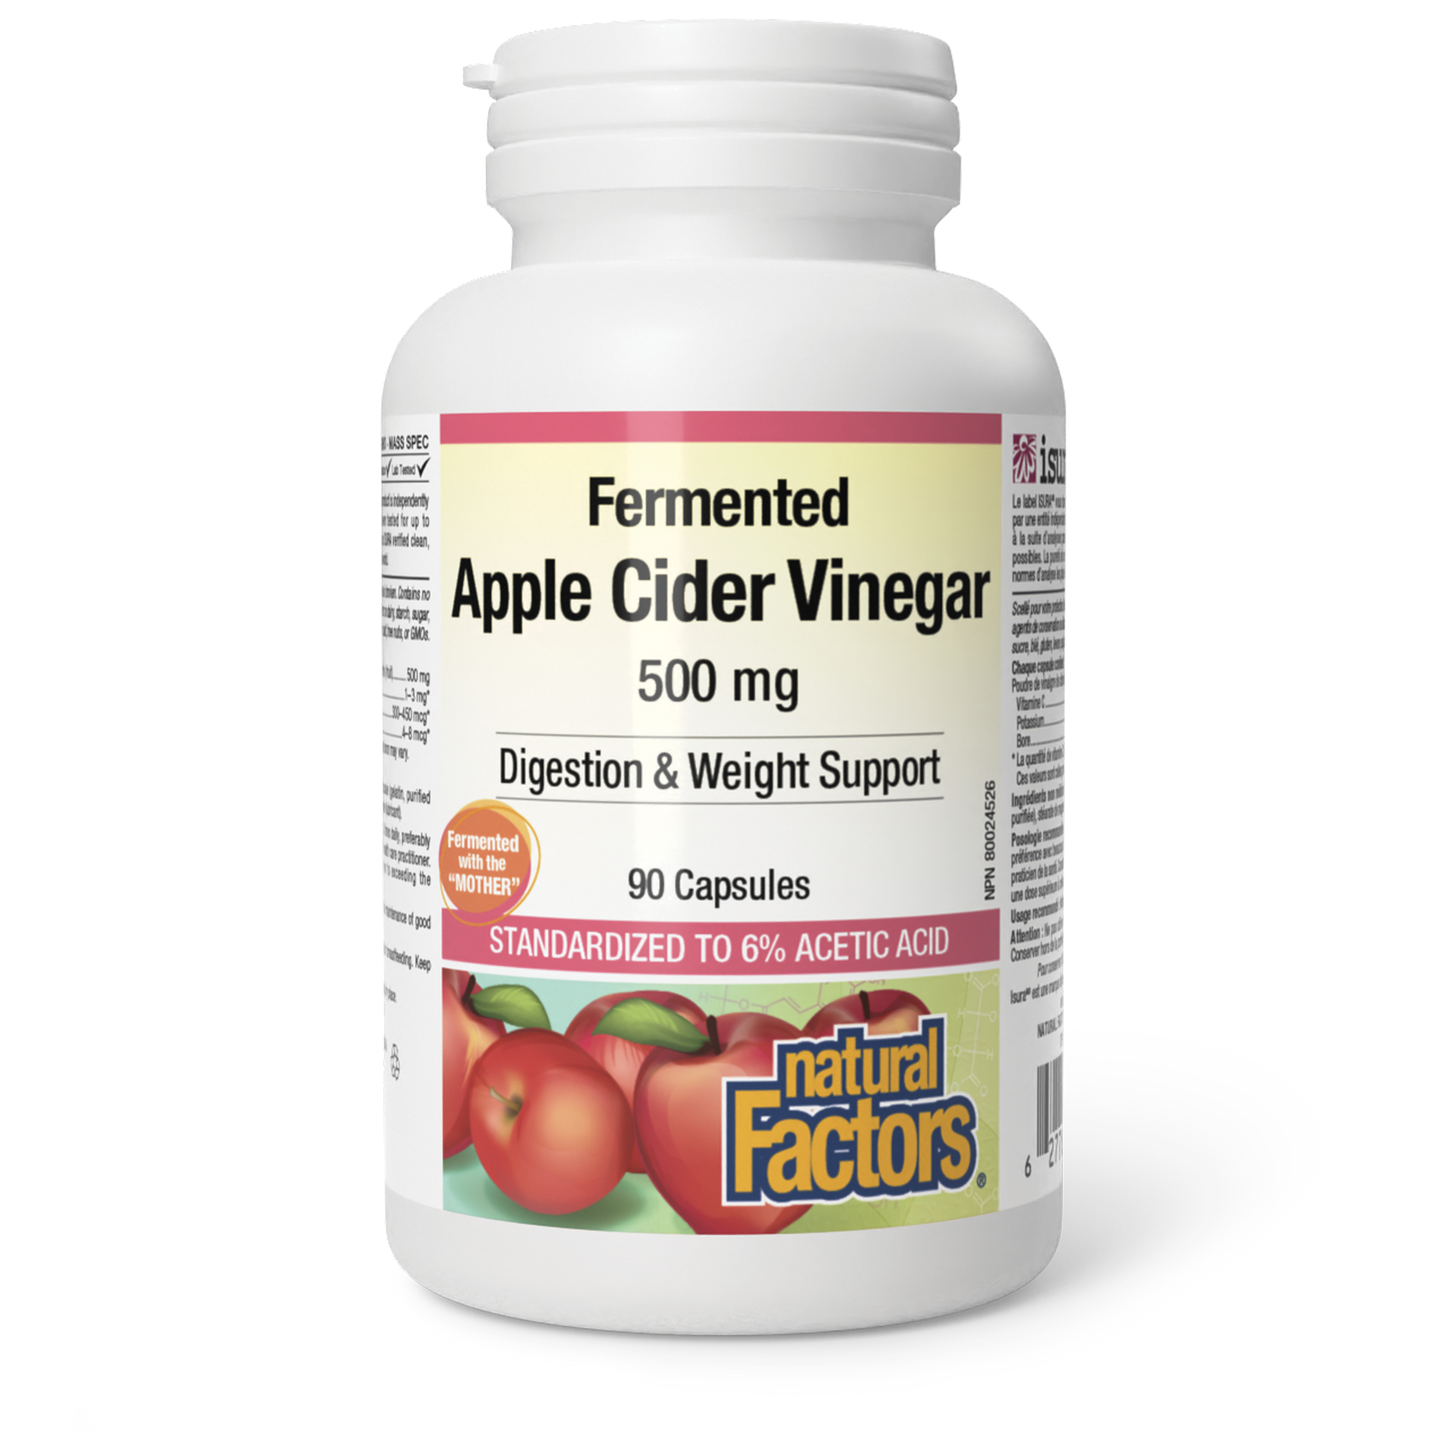 Fermented Apple Cider Vinegar 500 mg, Natural Factors|v|image|2055